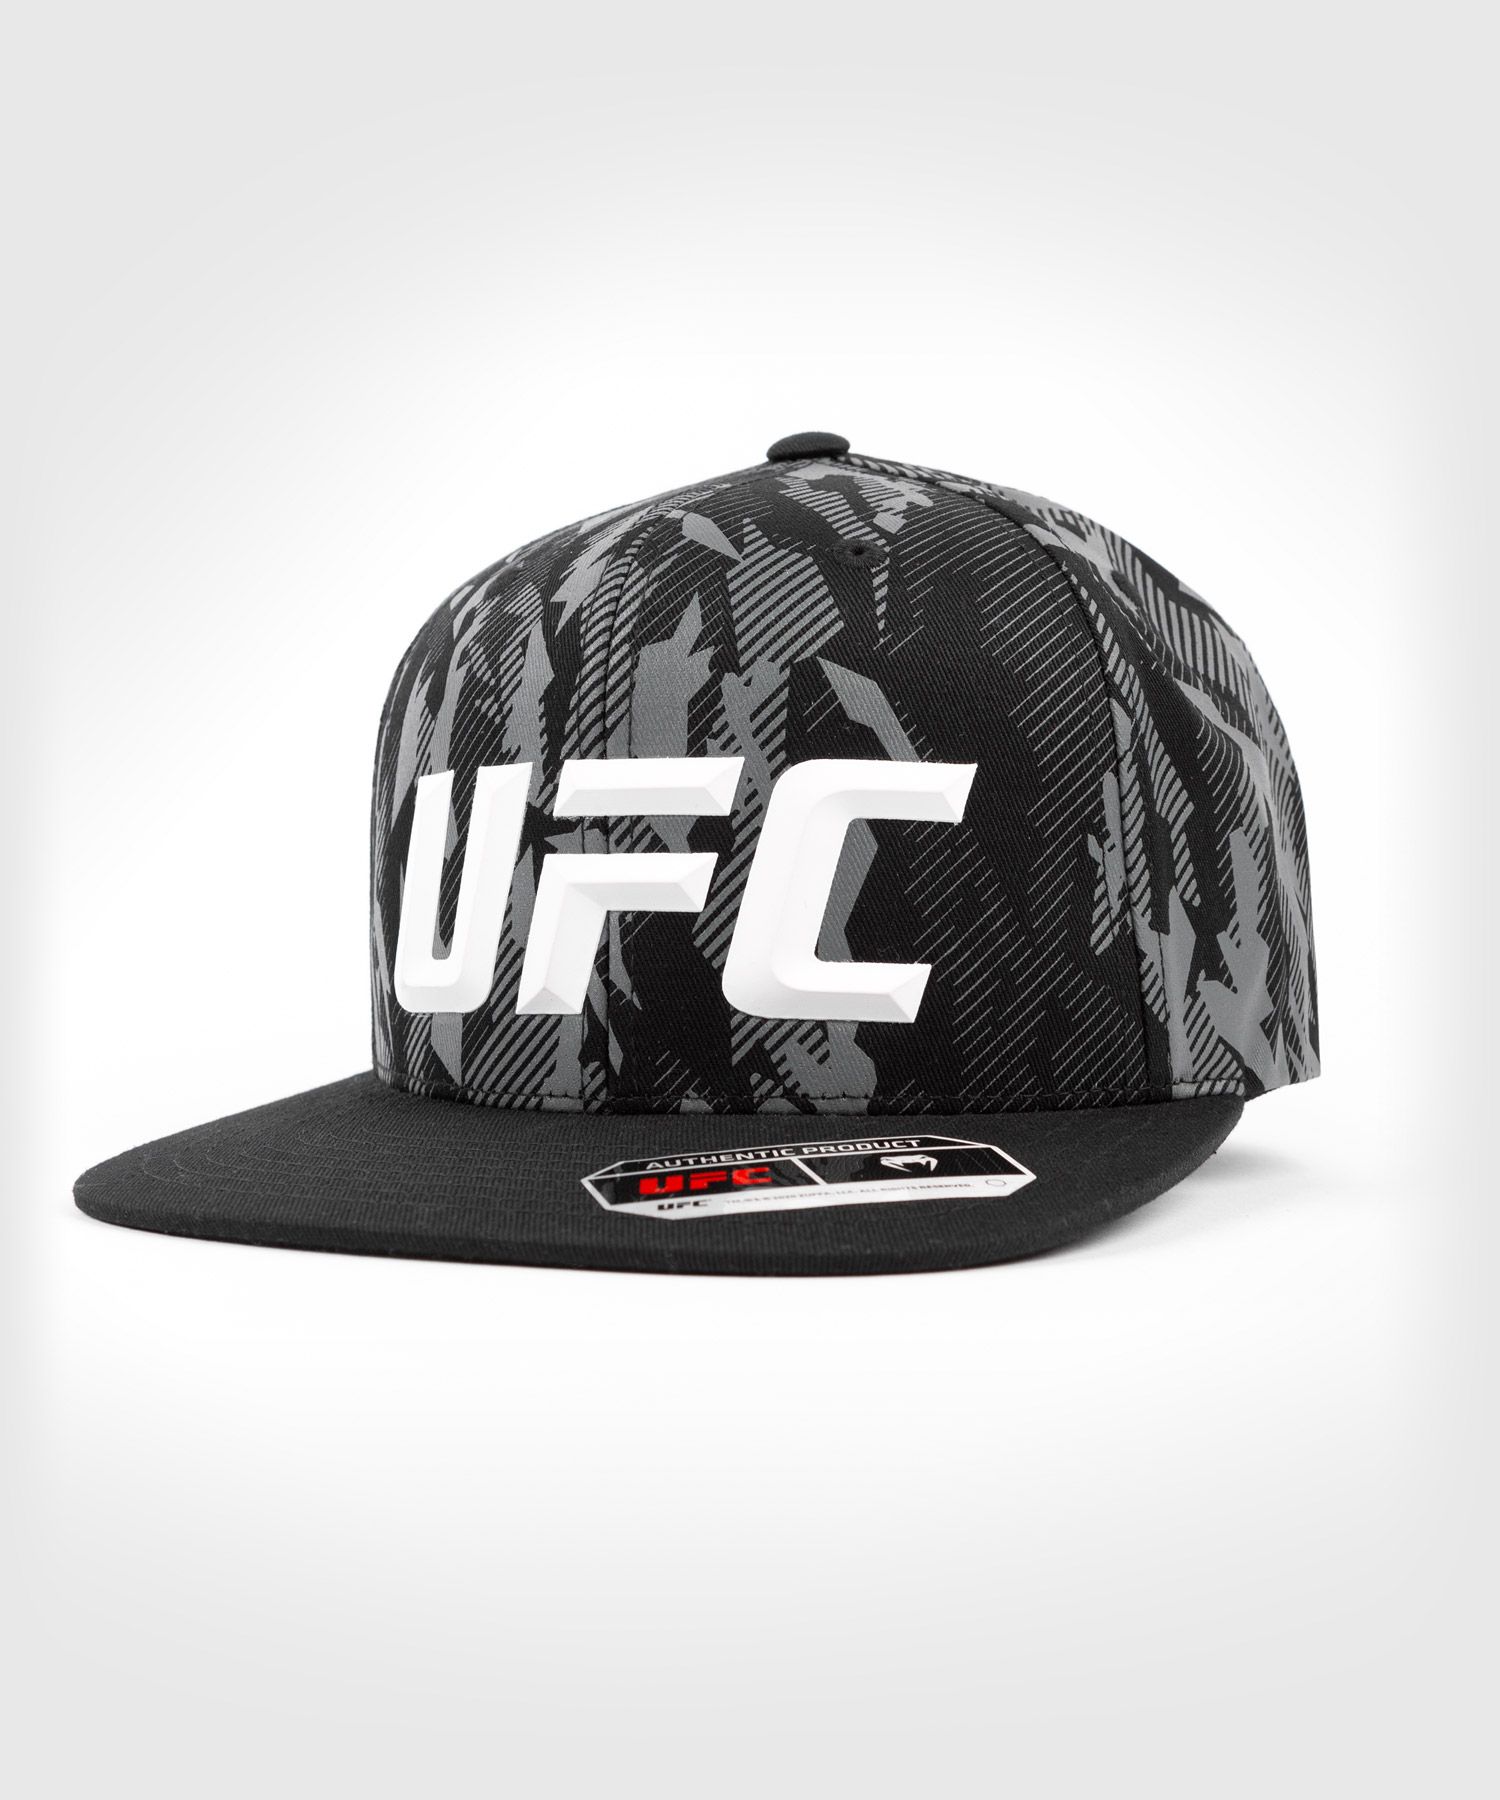 Casquette UFC Venum Authentic Fight Week - Noir